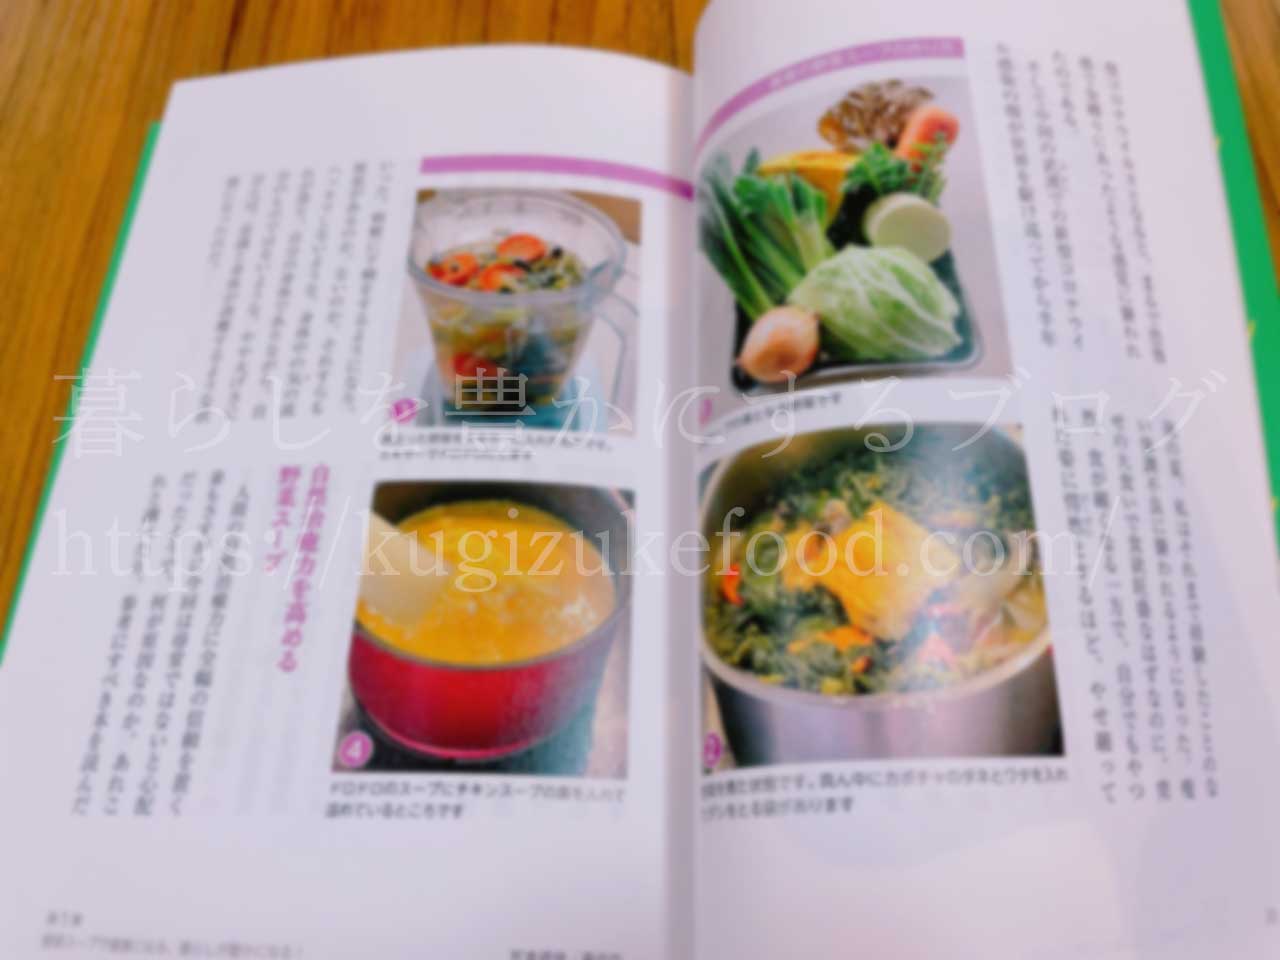 野菜の勉強おすすめ料理レシピ本「あの人も飲んでいる最強の野菜スープ」